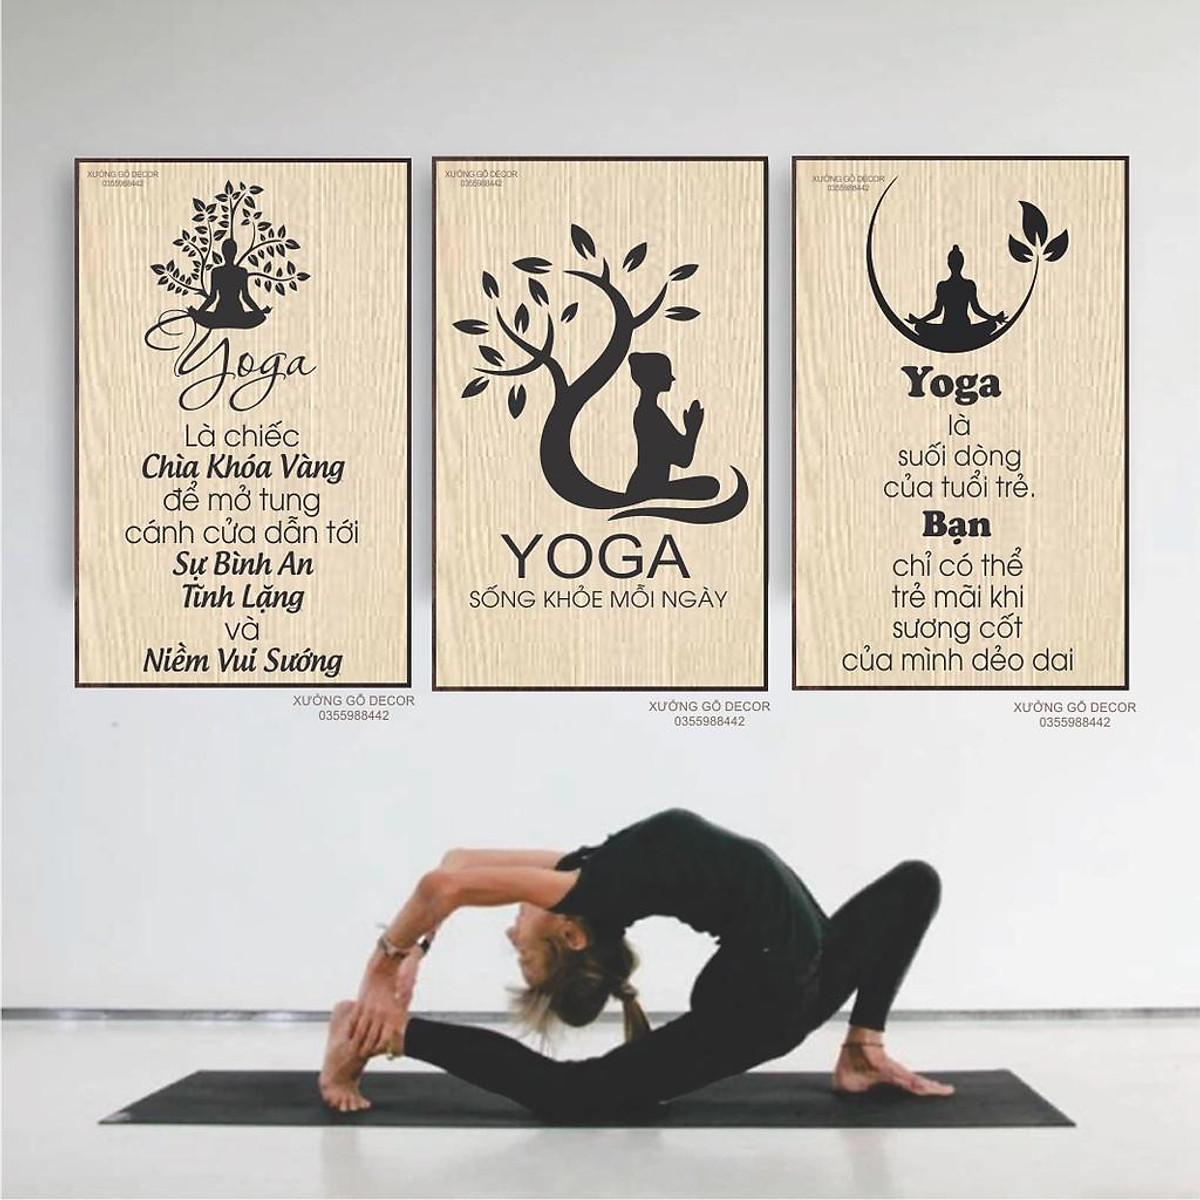 Tranh Decor Yoga Treo Tường Hoa Trang Trí Phòng Thiền, Phòng Tập - Trang trí phòng yoga
Bạn đang tìm kiếm một cách để trang trí phòng yoga của mình trở nên hoàn hảo hơn? Tranh decor yoga treo tường với hình hoa rực rỡ chắc chắn sẽ làm cho phòng thiền của bạn trở nên thật hoàn thiện. Làm mới không gian tập luyện của bạn với món đồ trang trí đẹp và tinh tế này.